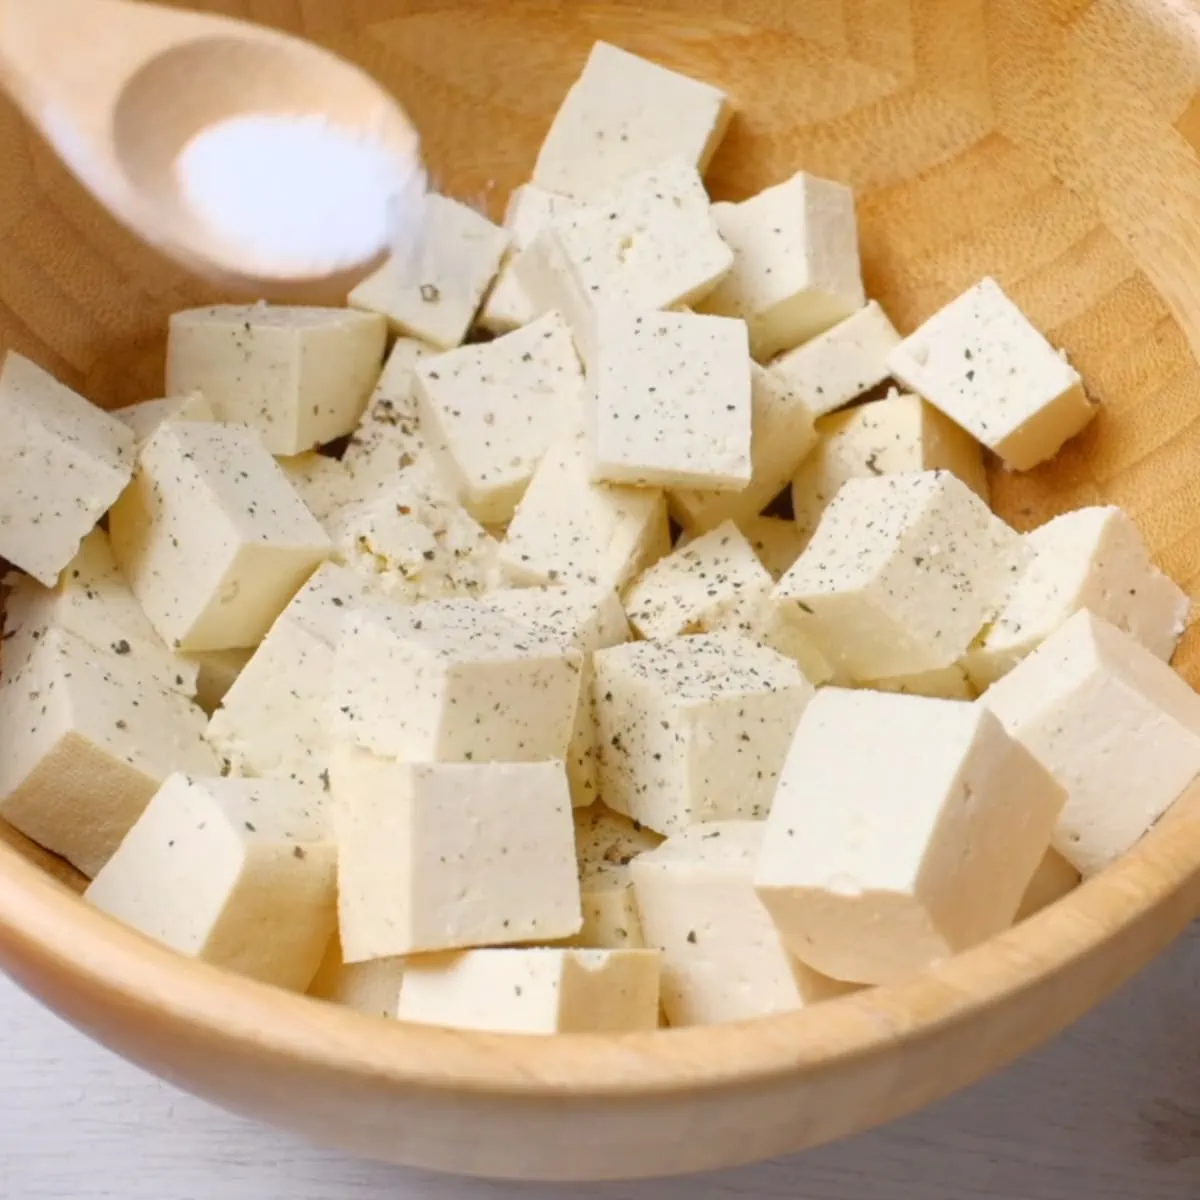 Add Salt to tofu